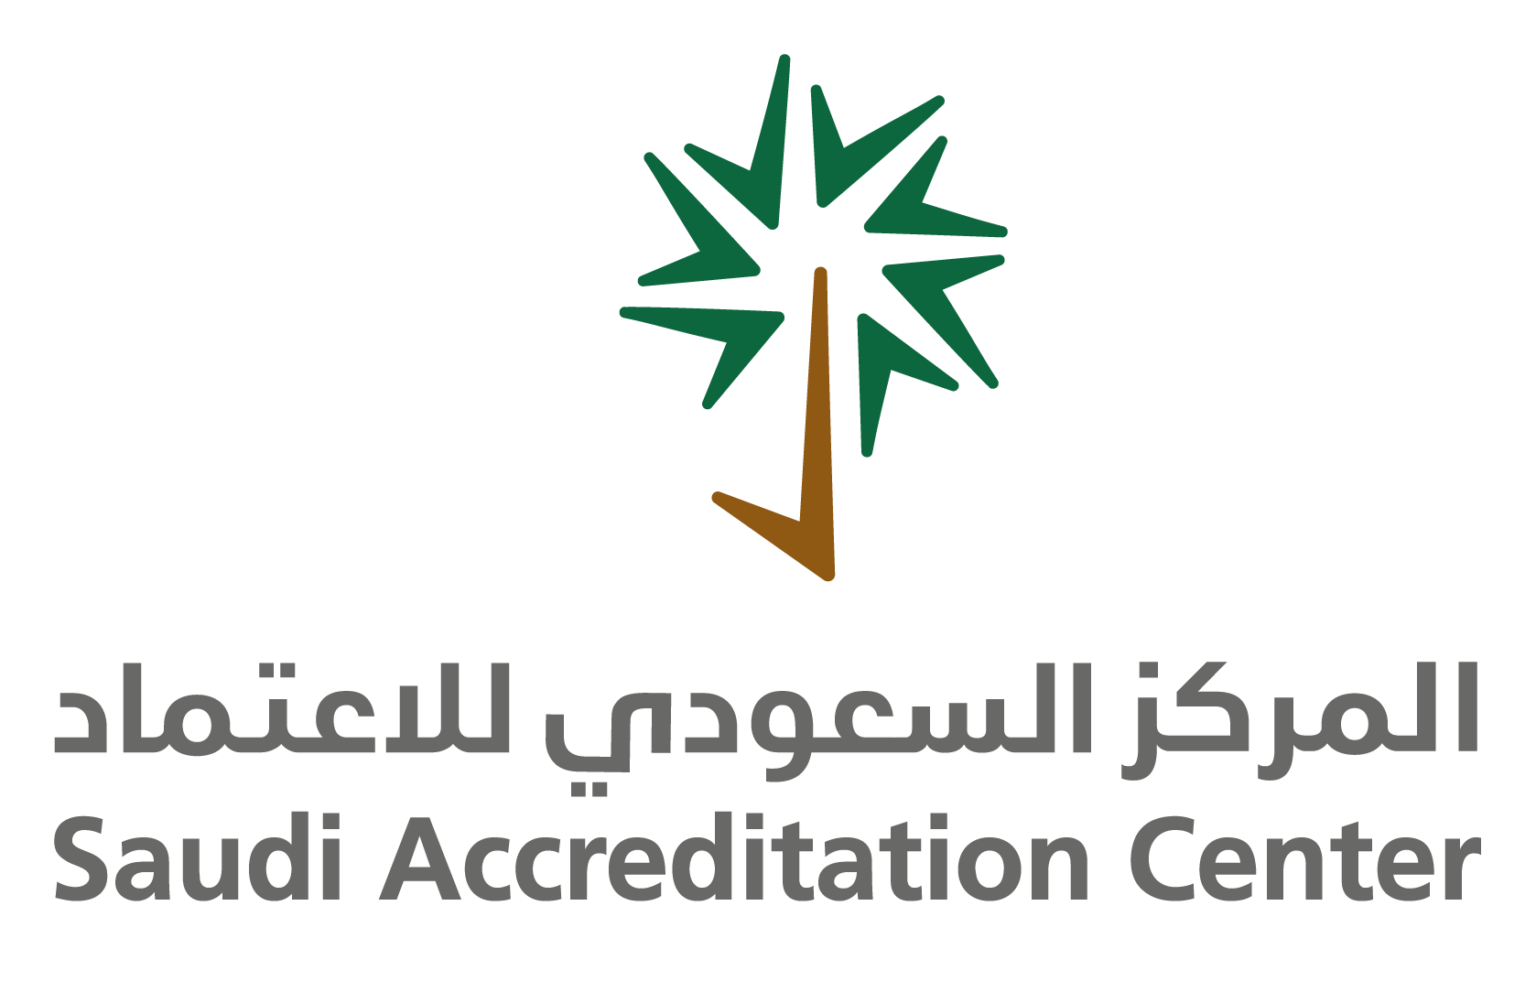 Saudi Accreditation Center (SAAC)